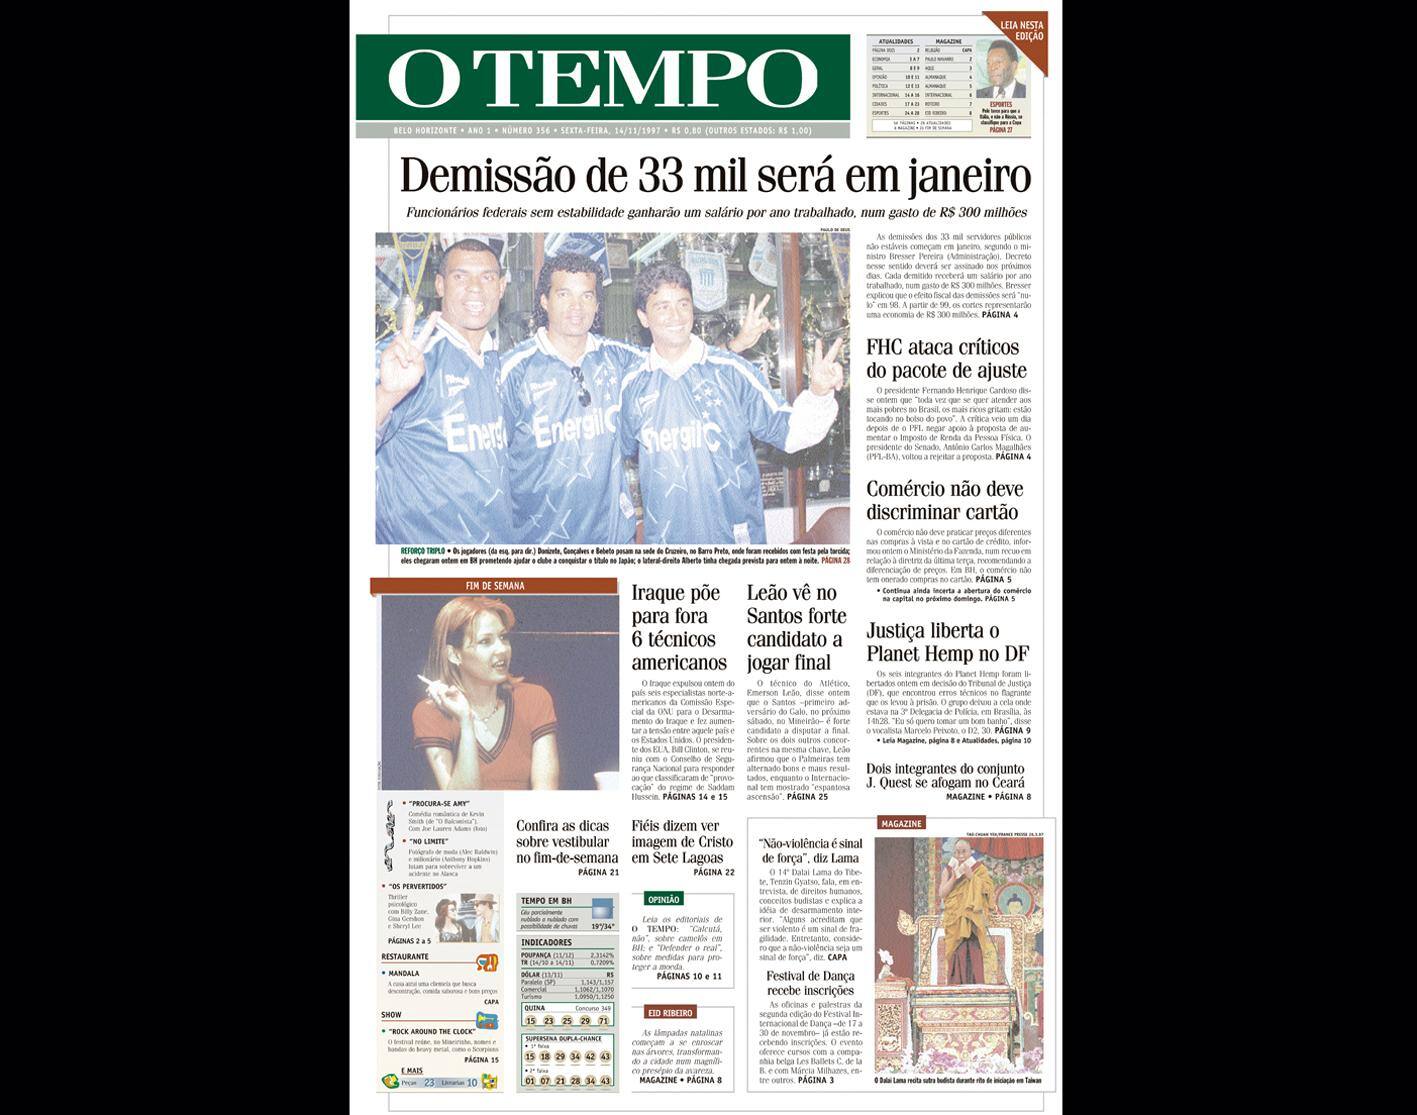 Capa do jornal O TEMPO no dia 14.11.1997; resgate do acervo marca as comemorações dos 25 anos da publicação